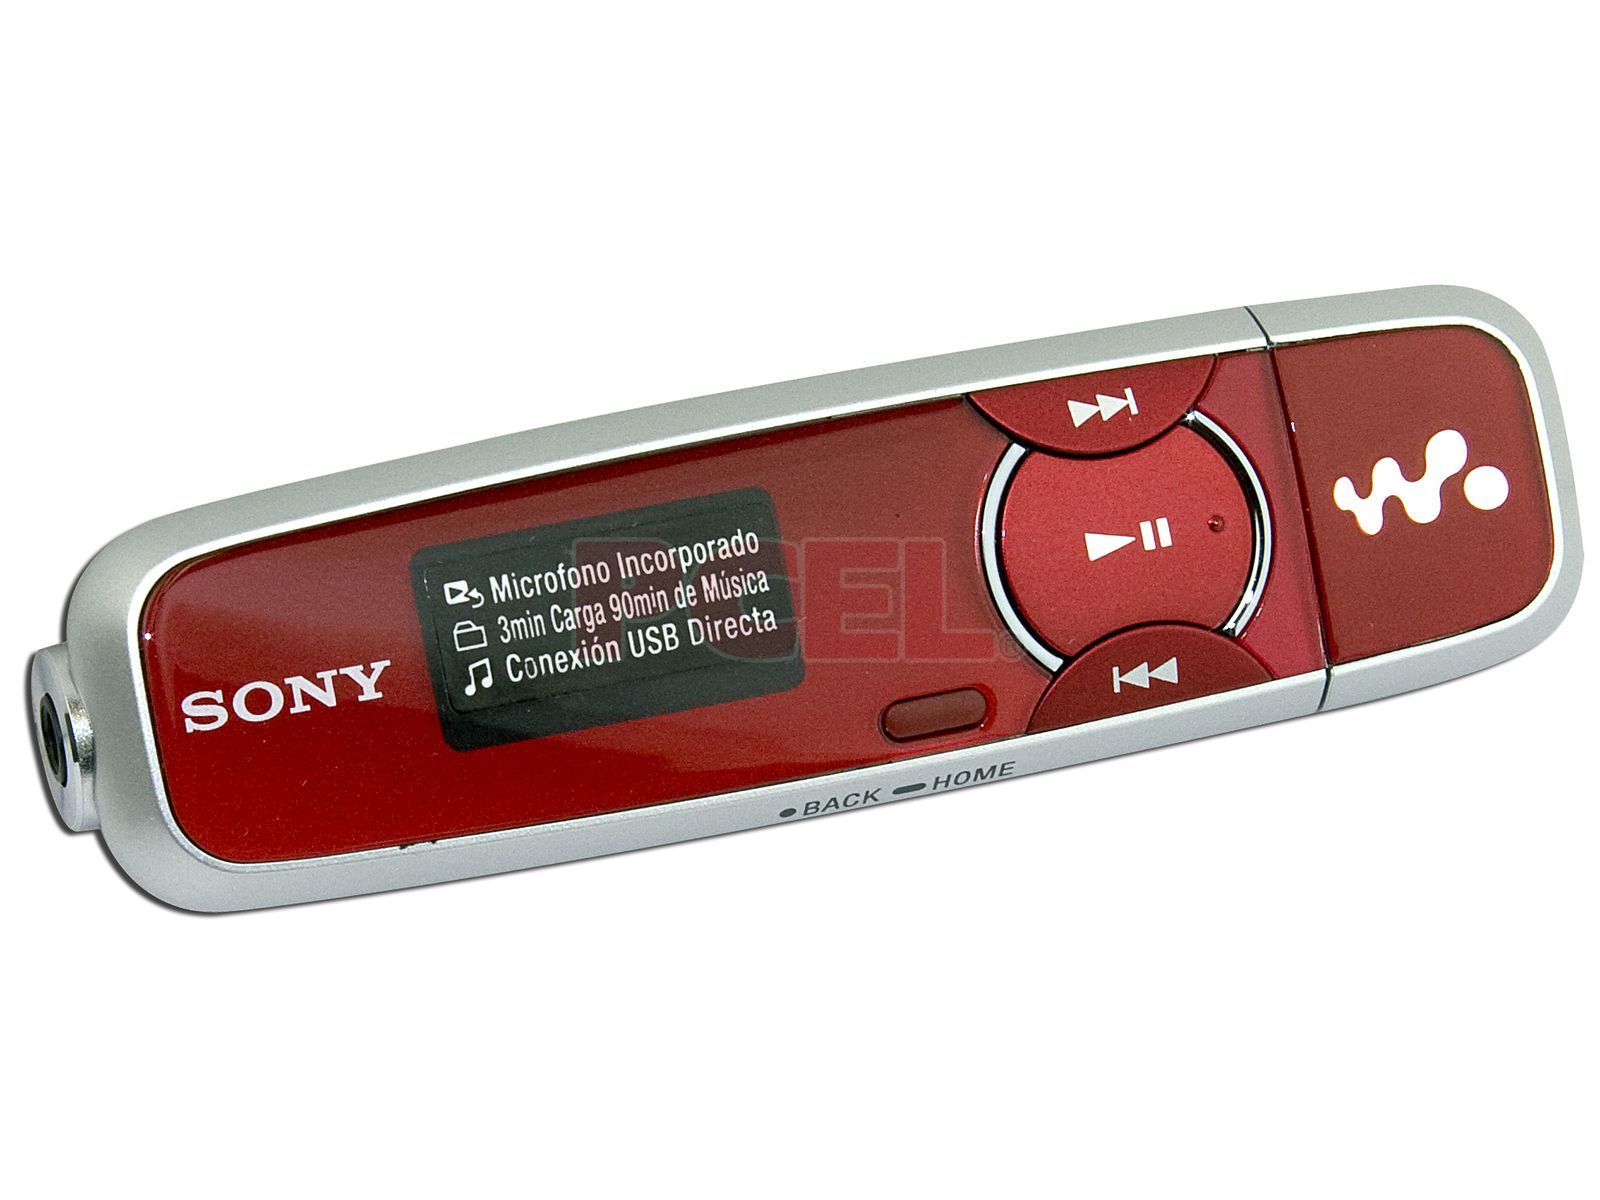 Sony Walkman Reproductor Mp3 Rojo Foto editorial - Imagen de rojo, esto:  202574271